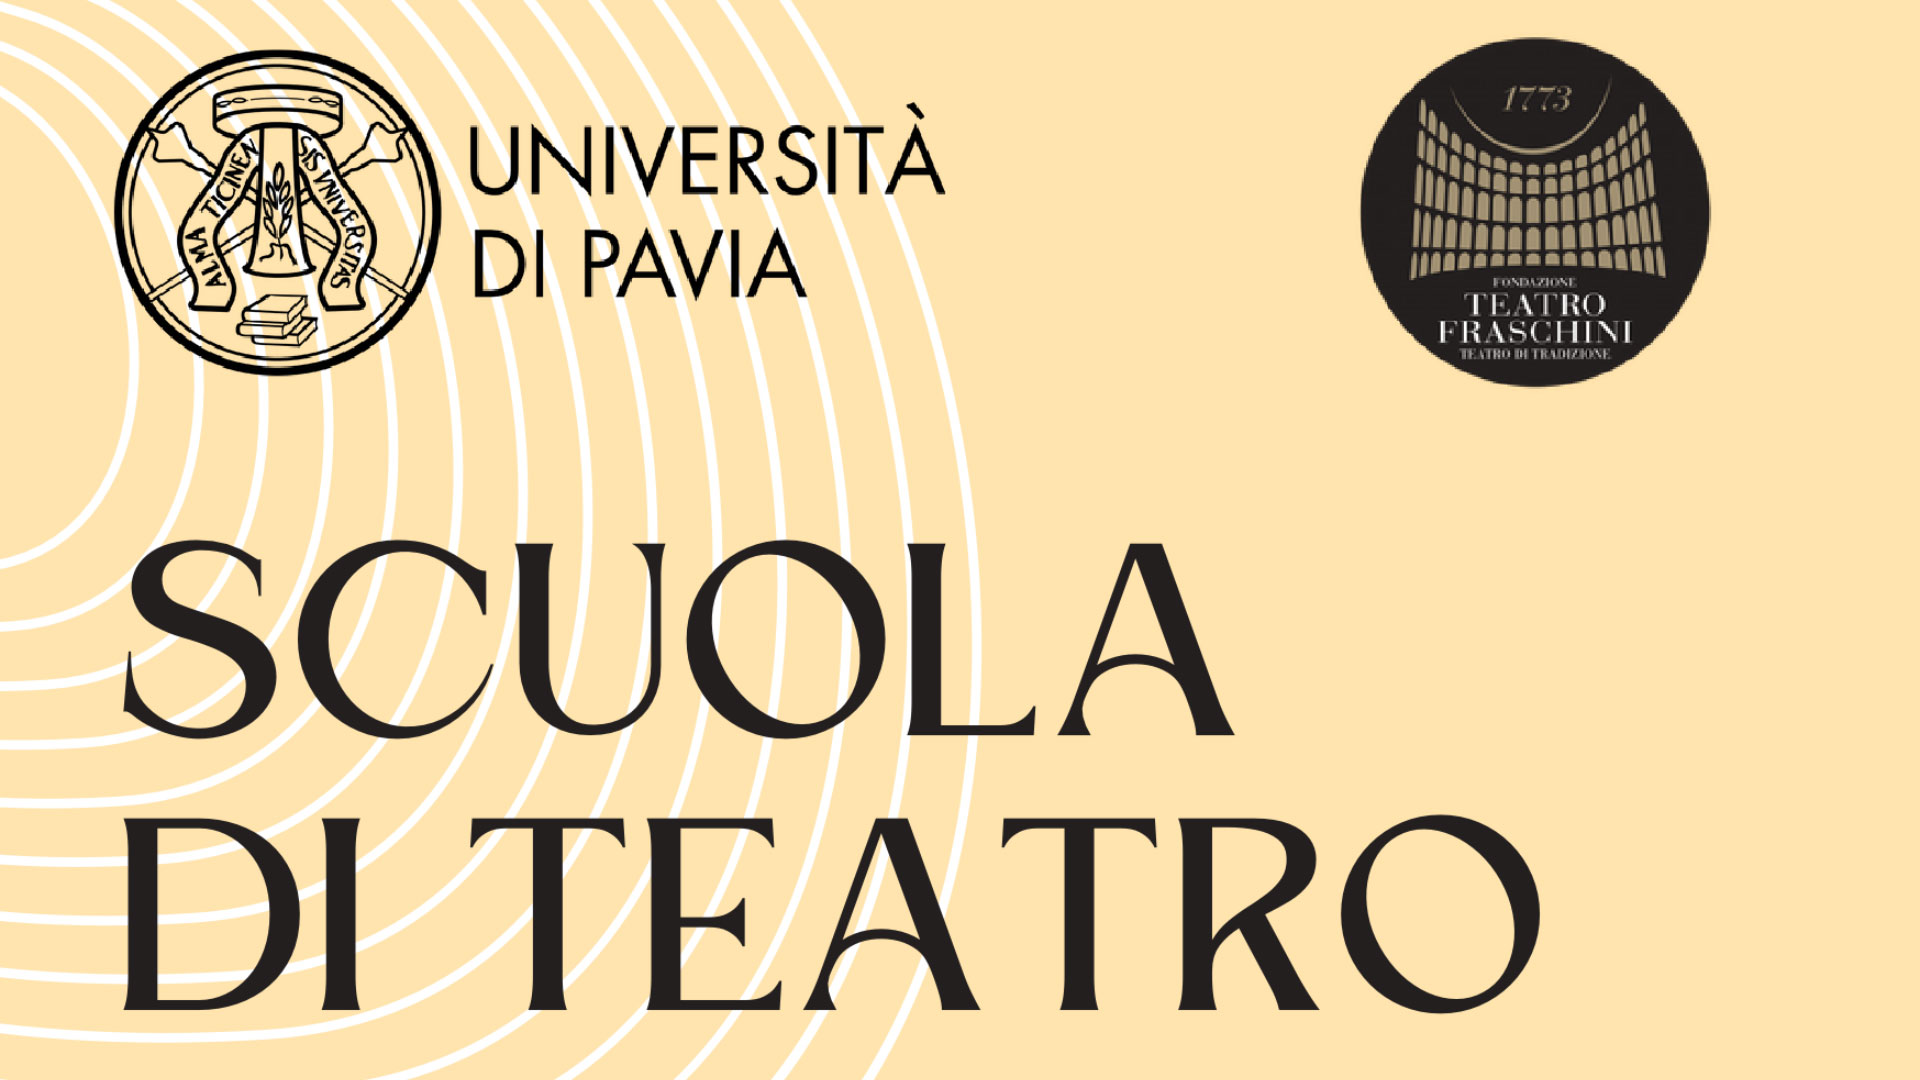 Scuola di Teatro – Dal 31 luglio sono aperte le iscrizioni alla nuova edizione